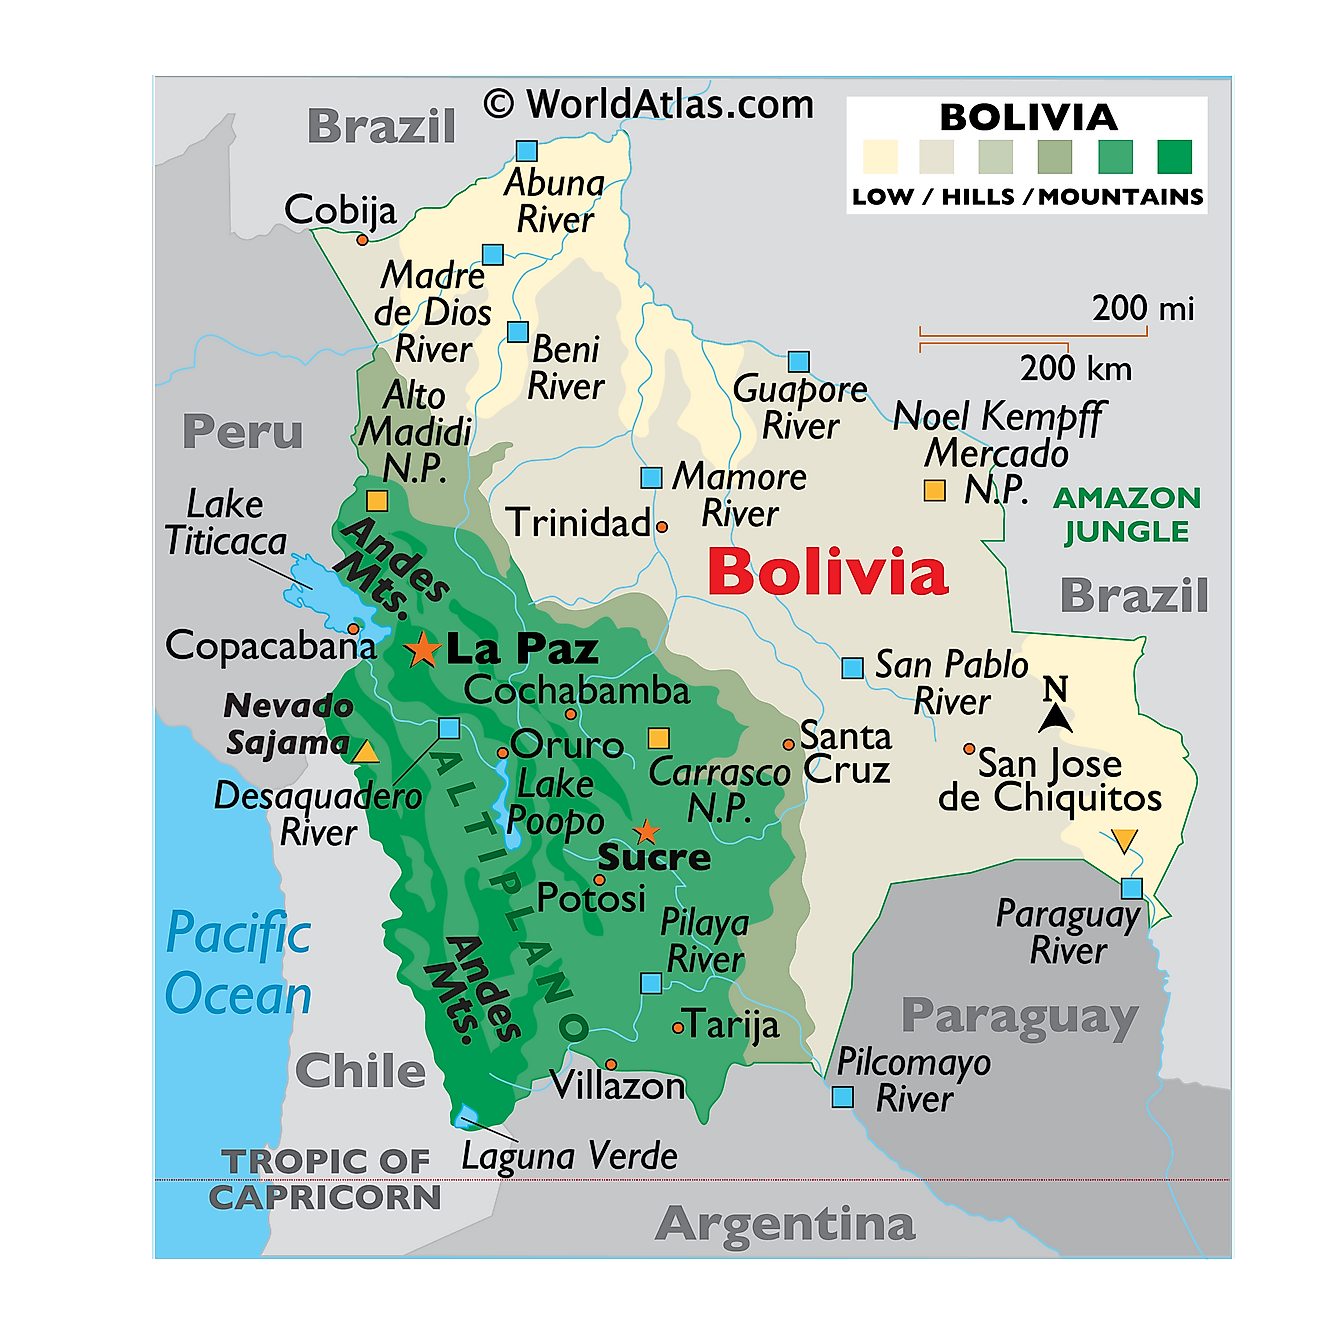 Mapa físico de Bolivia que muestra relieve, ríos, cadenas montañosas, lagos principales, ciudades importantes, países limítrofes y más.